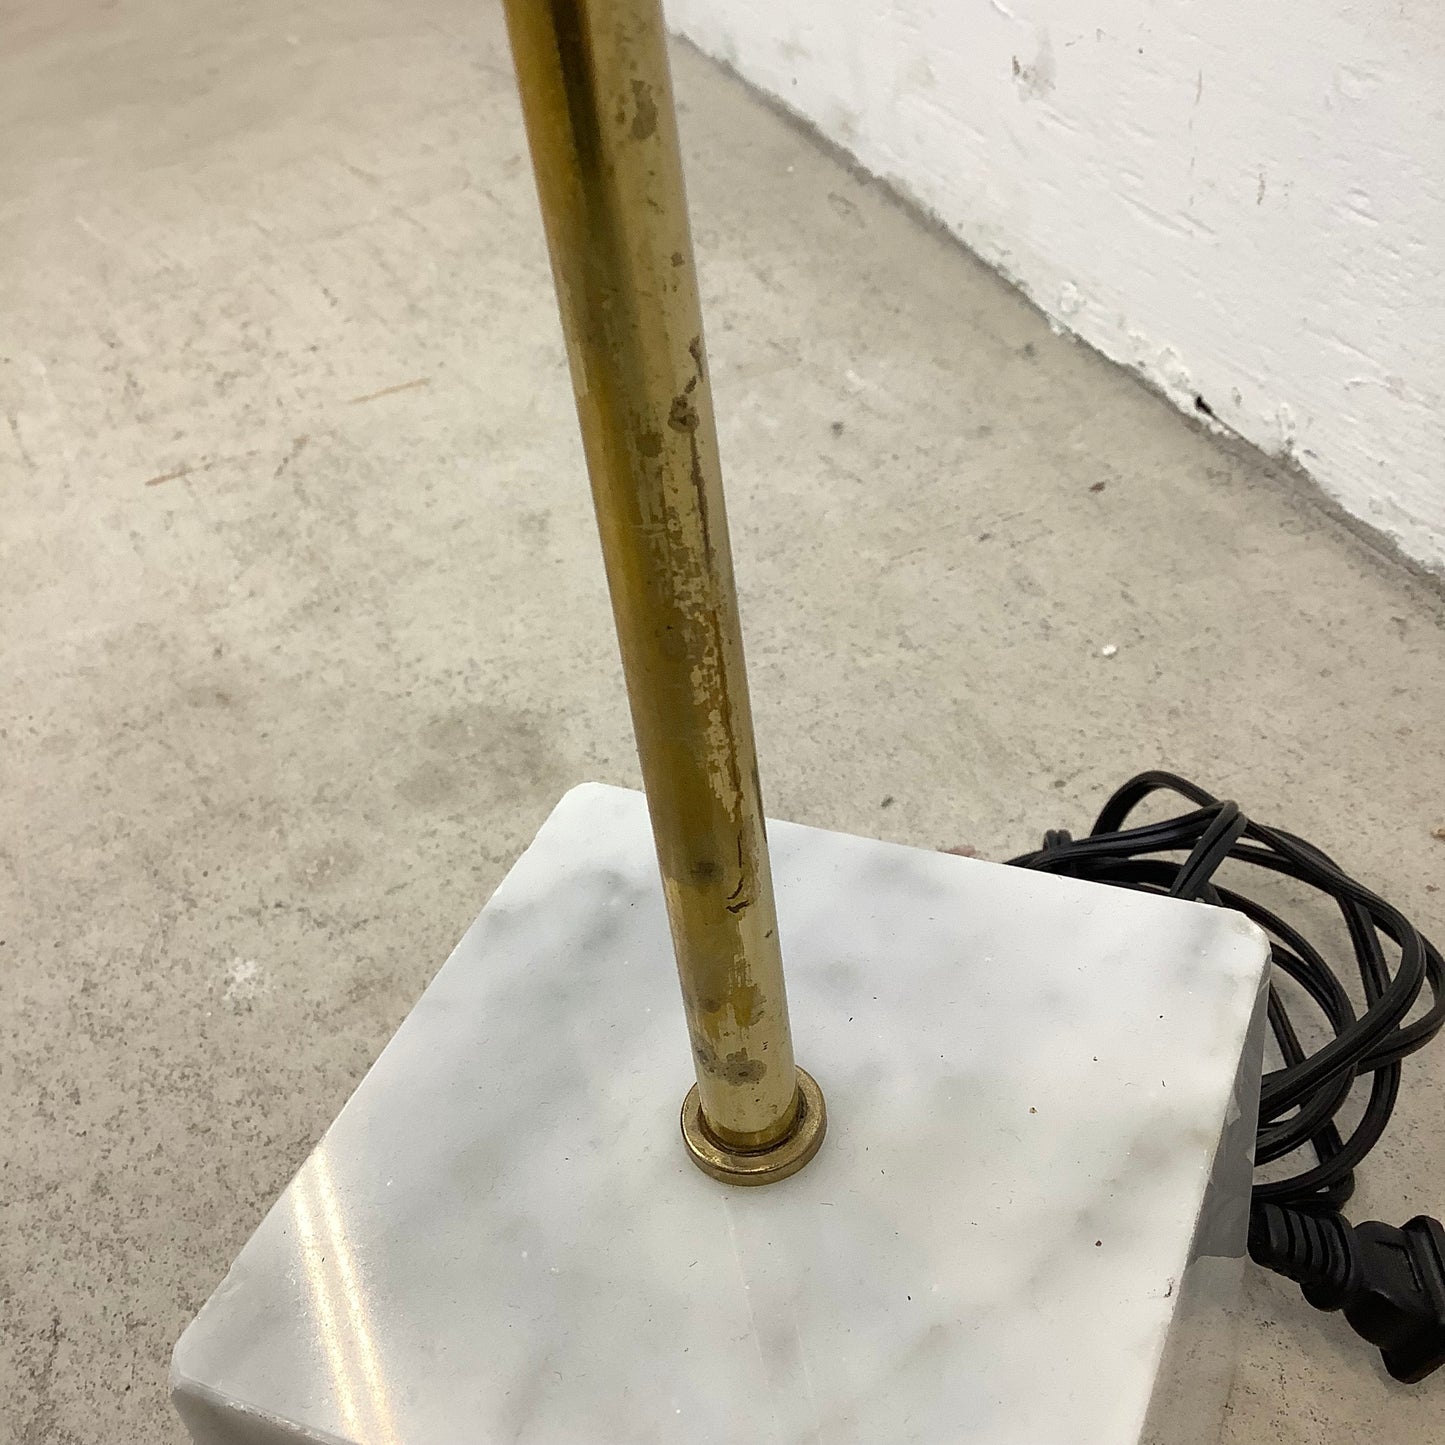 Vintage Marble Base Floor Lamp Attr. Robert Sonneman for George Kovacs